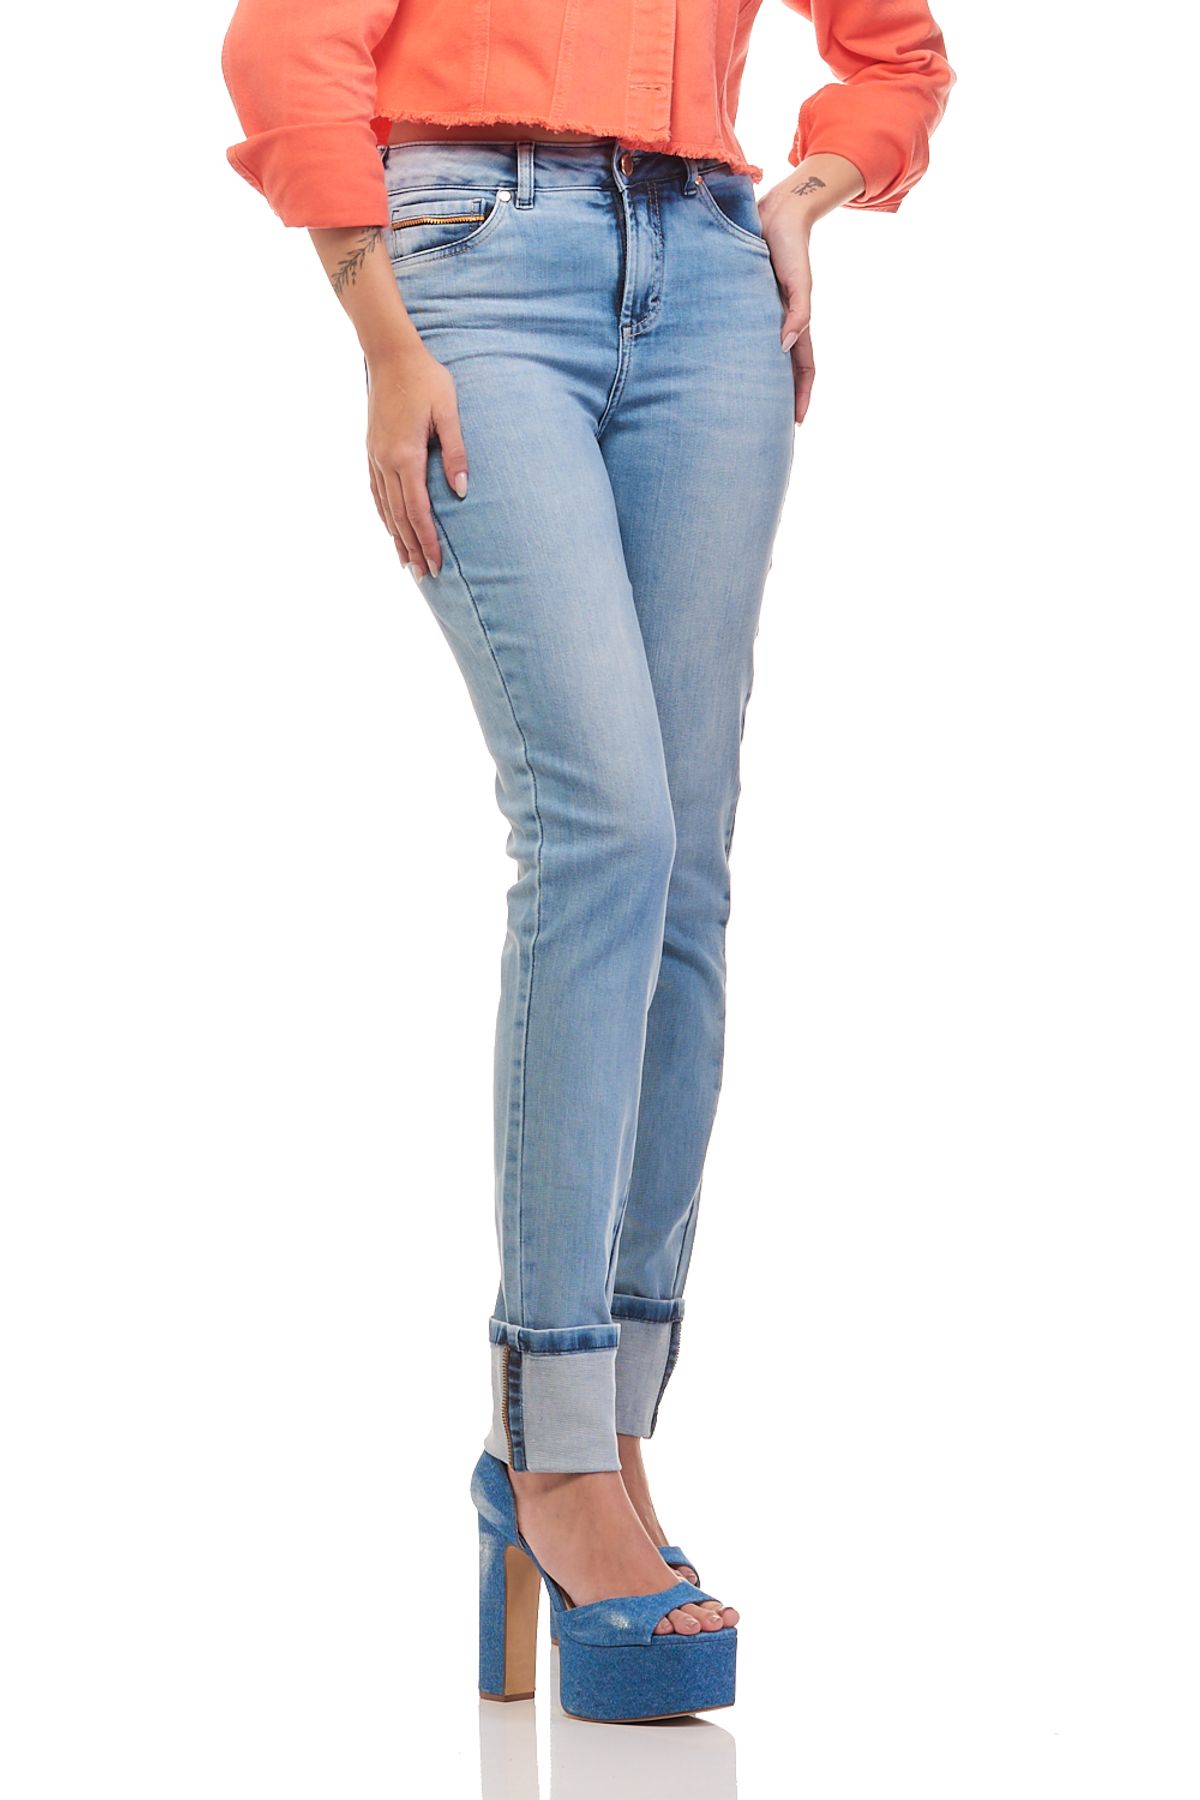 Calça Patogê feminina boot cut jeans cintura alta (G4) CL37033